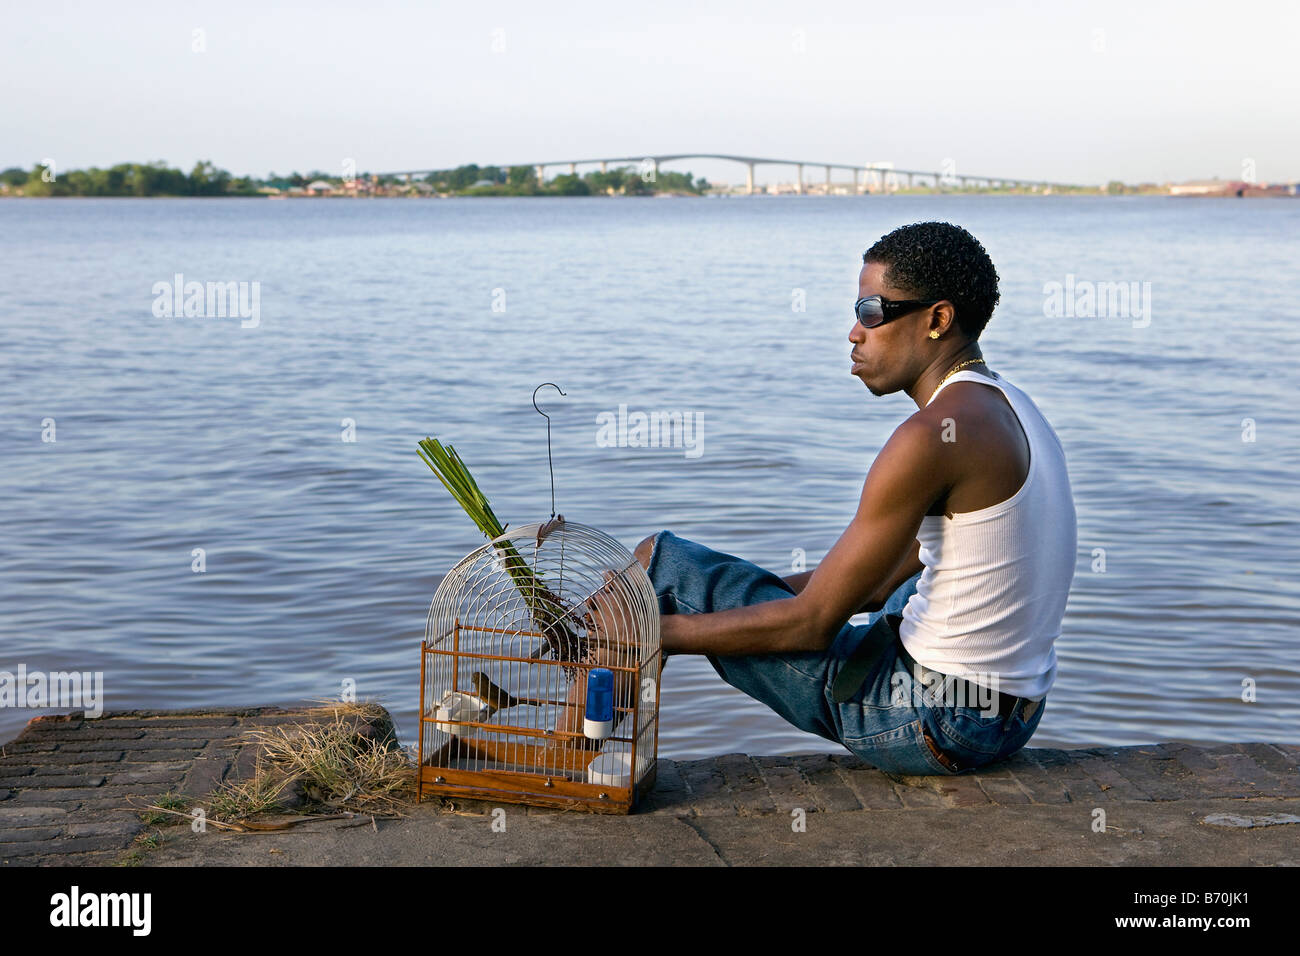 Suriname, Paramaribo. Kreolische Mann und Picolet Singvogel, essen Reis-Rasen. Suriname-Fluss und Wijdenbosch Brücke. Stockfoto